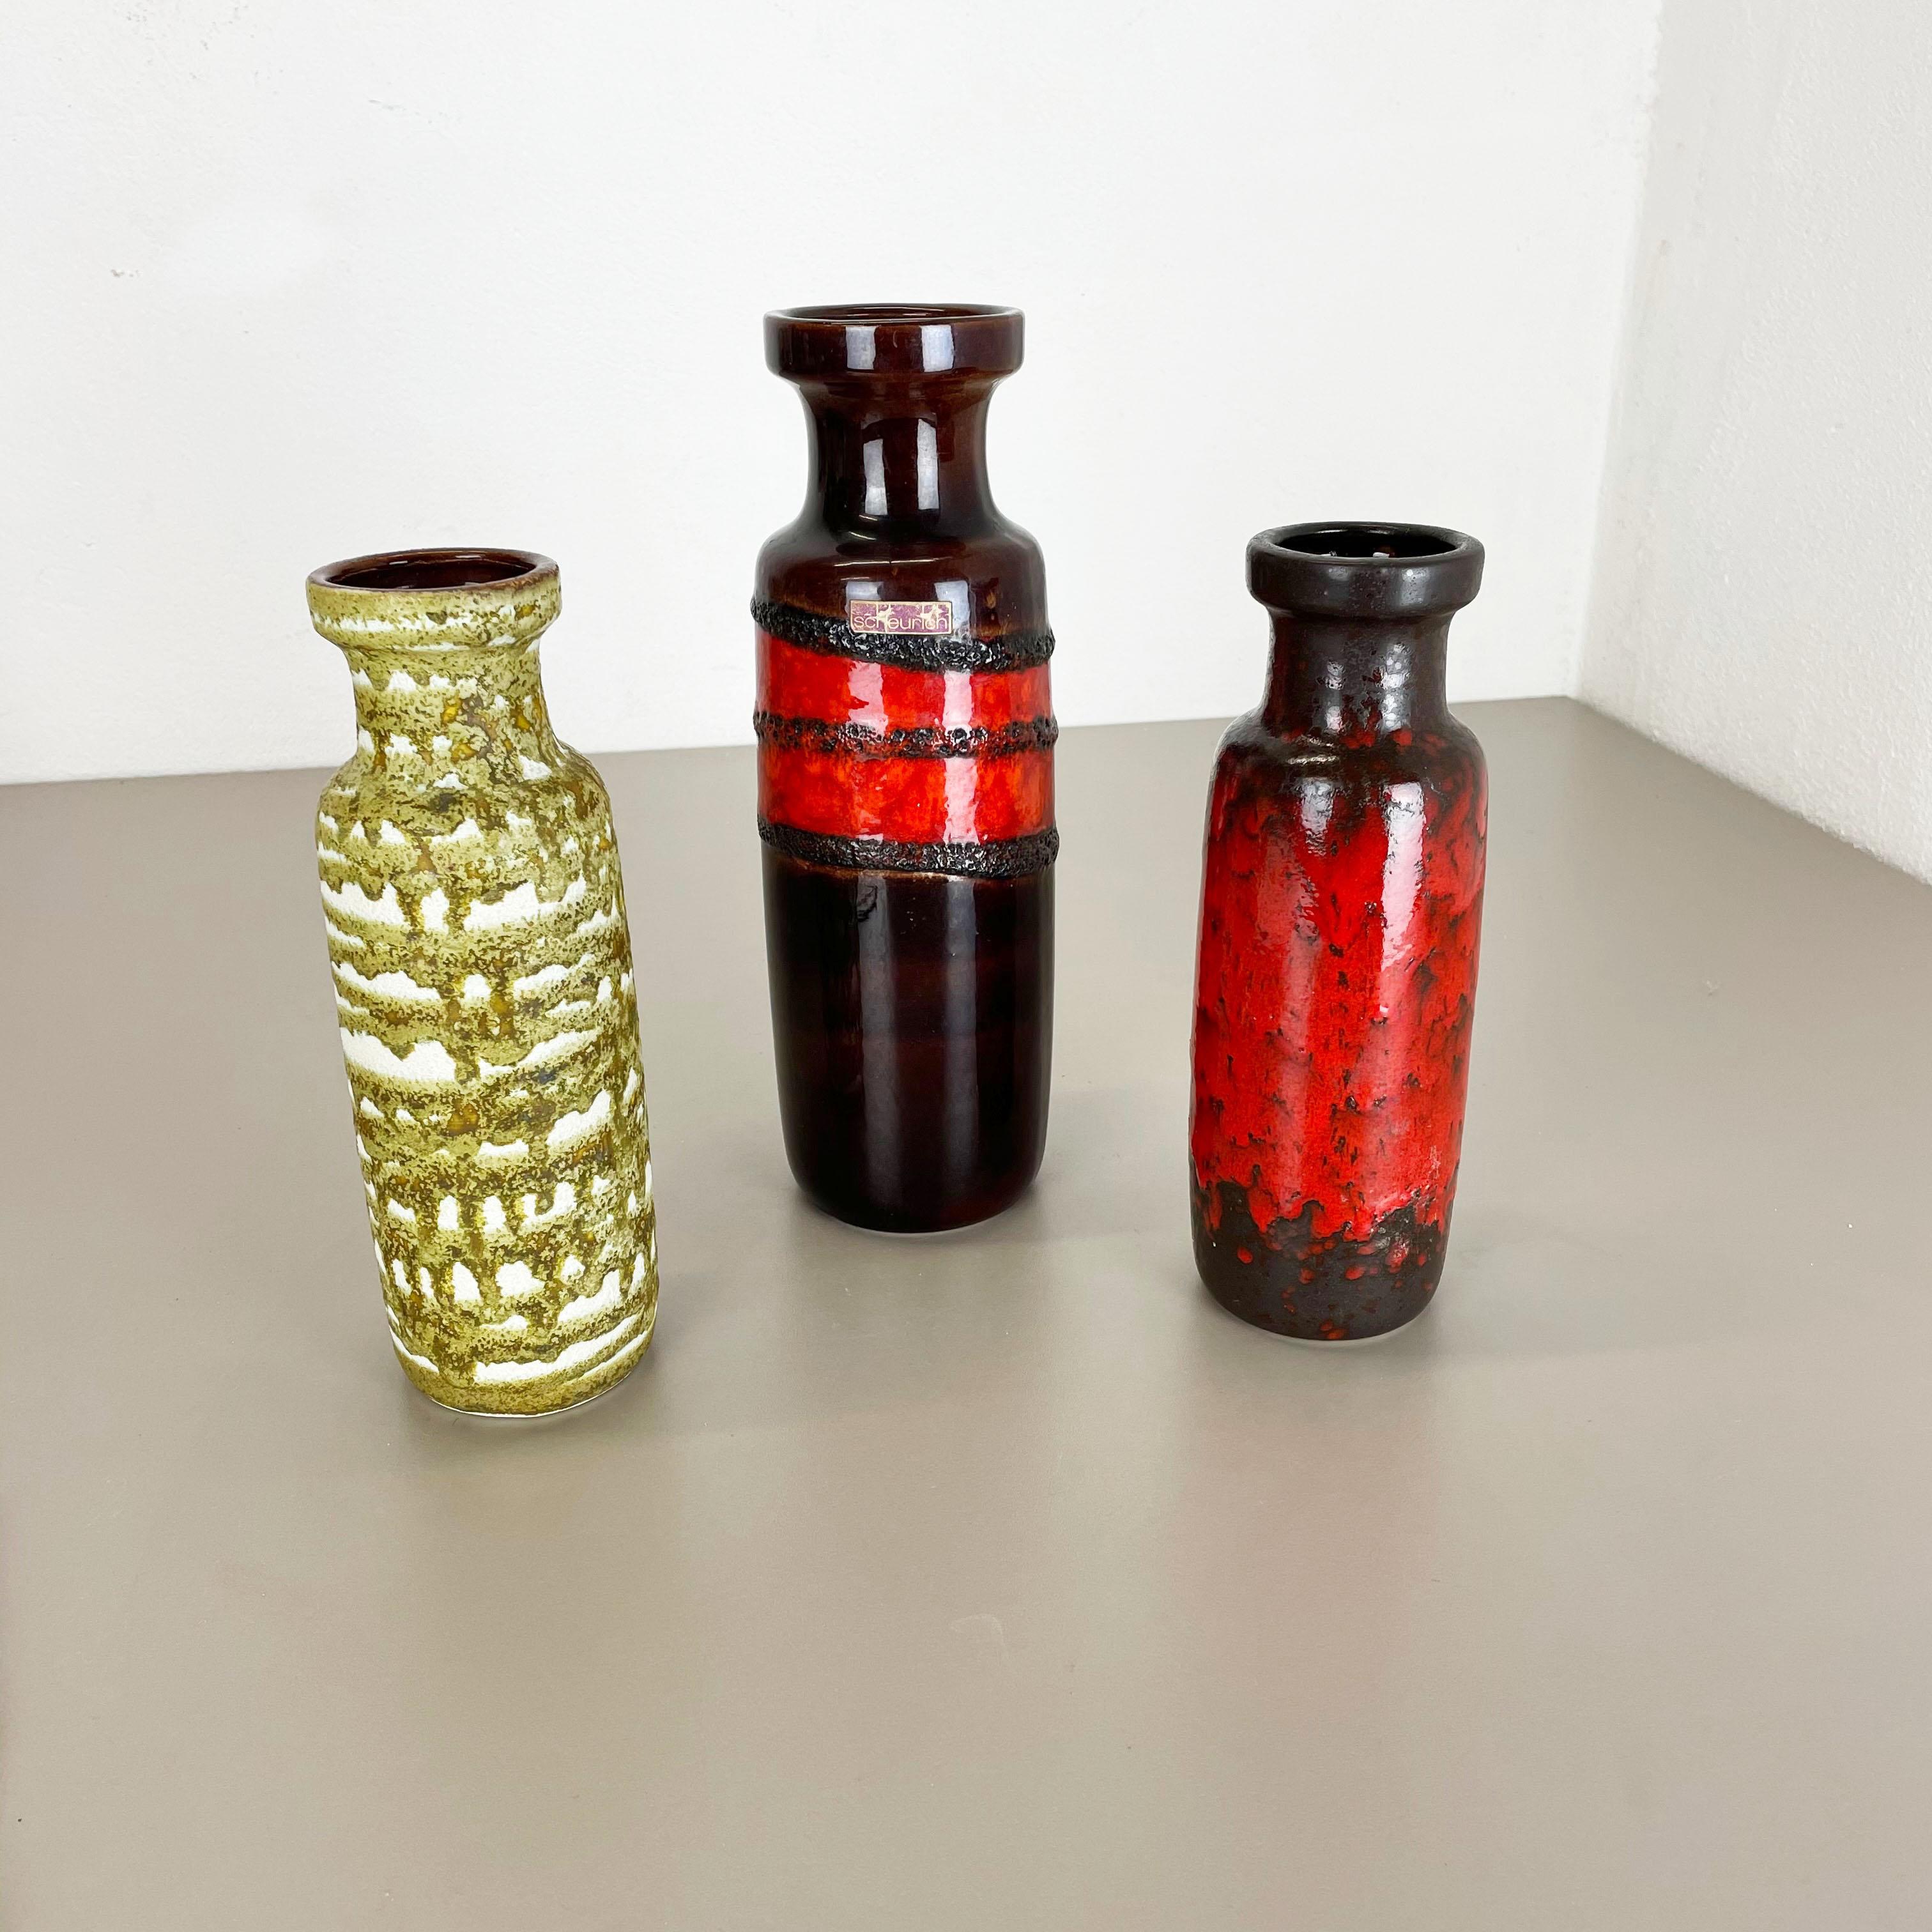 Artikel:

Satz von drei fetten Lavakunstvasen


Produzent:

Scheurich, Deutschland


Jahrzehnt:

1970s


Diese originelle Vintage-Vase wurde in den 1970er Jahren in Deutschland hergestellt. Sie ist aus Porzellan in Fat Lava-Optik